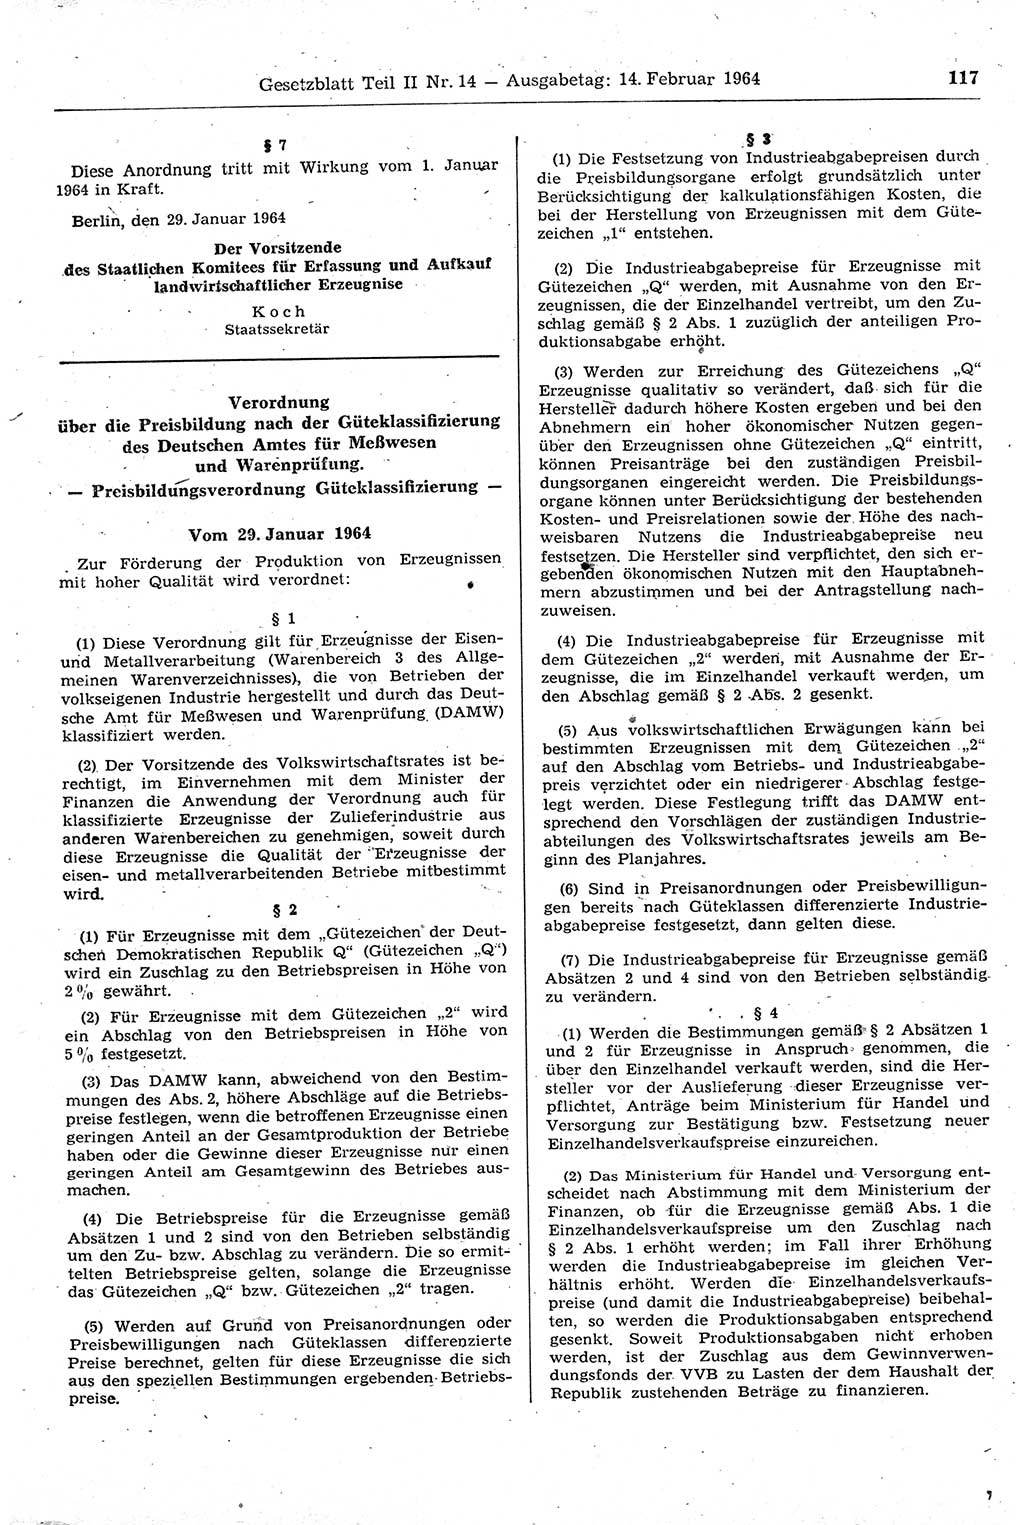 Gesetzblatt (GBl.) der Deutschen Demokratischen Republik (DDR) Teil ⅠⅠ 1964, Seite 117 (GBl. DDR ⅠⅠ 1964, S. 117)